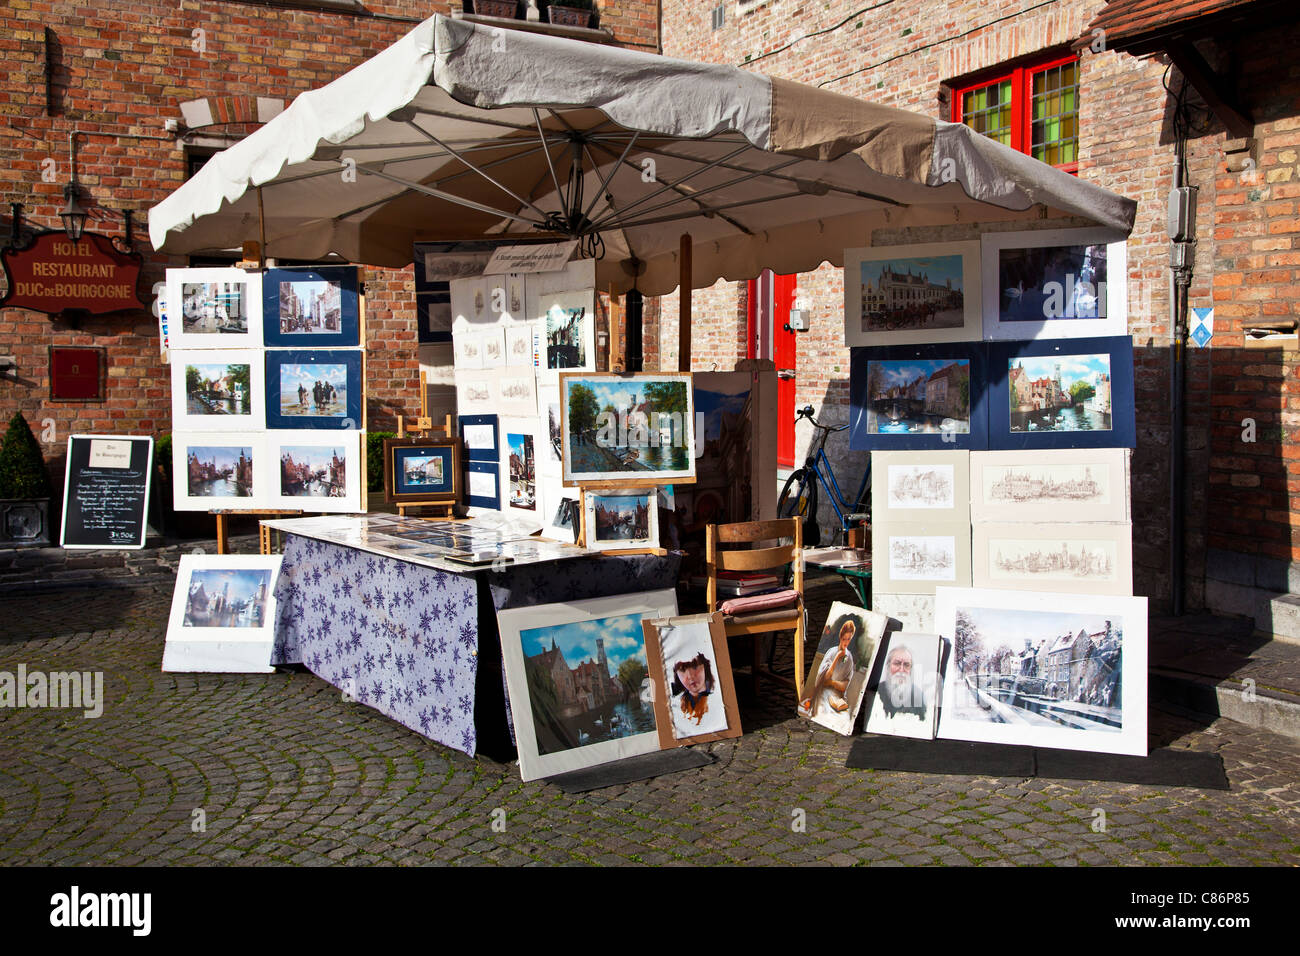 Un étal de souvenirs vendant des impressions touristiques, peintures et dessins dans le Plein Huidevetters ou la place des tanneurs, Bruges, Belgique Banque D'Images